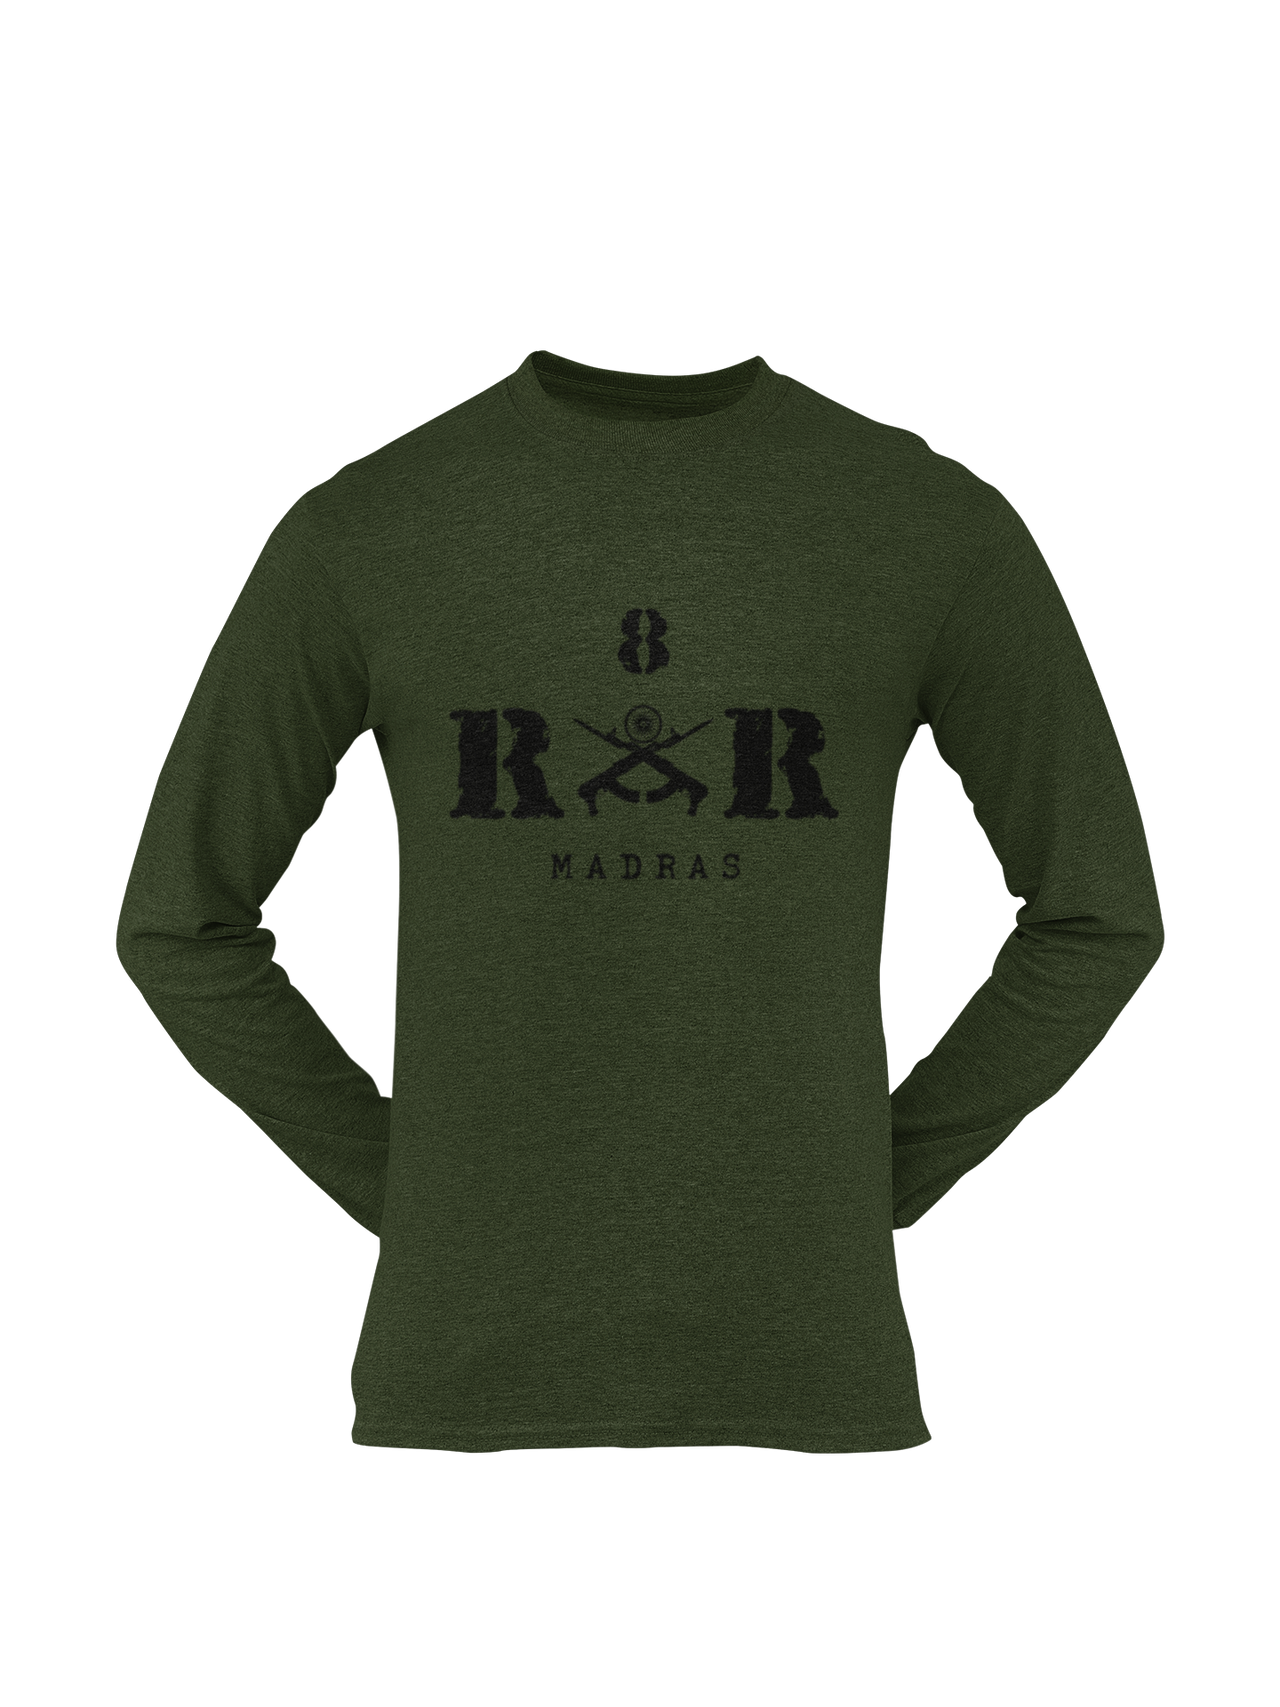 Rashtriya Rifles T-shirt - 9 RR Raj Rif (Men)